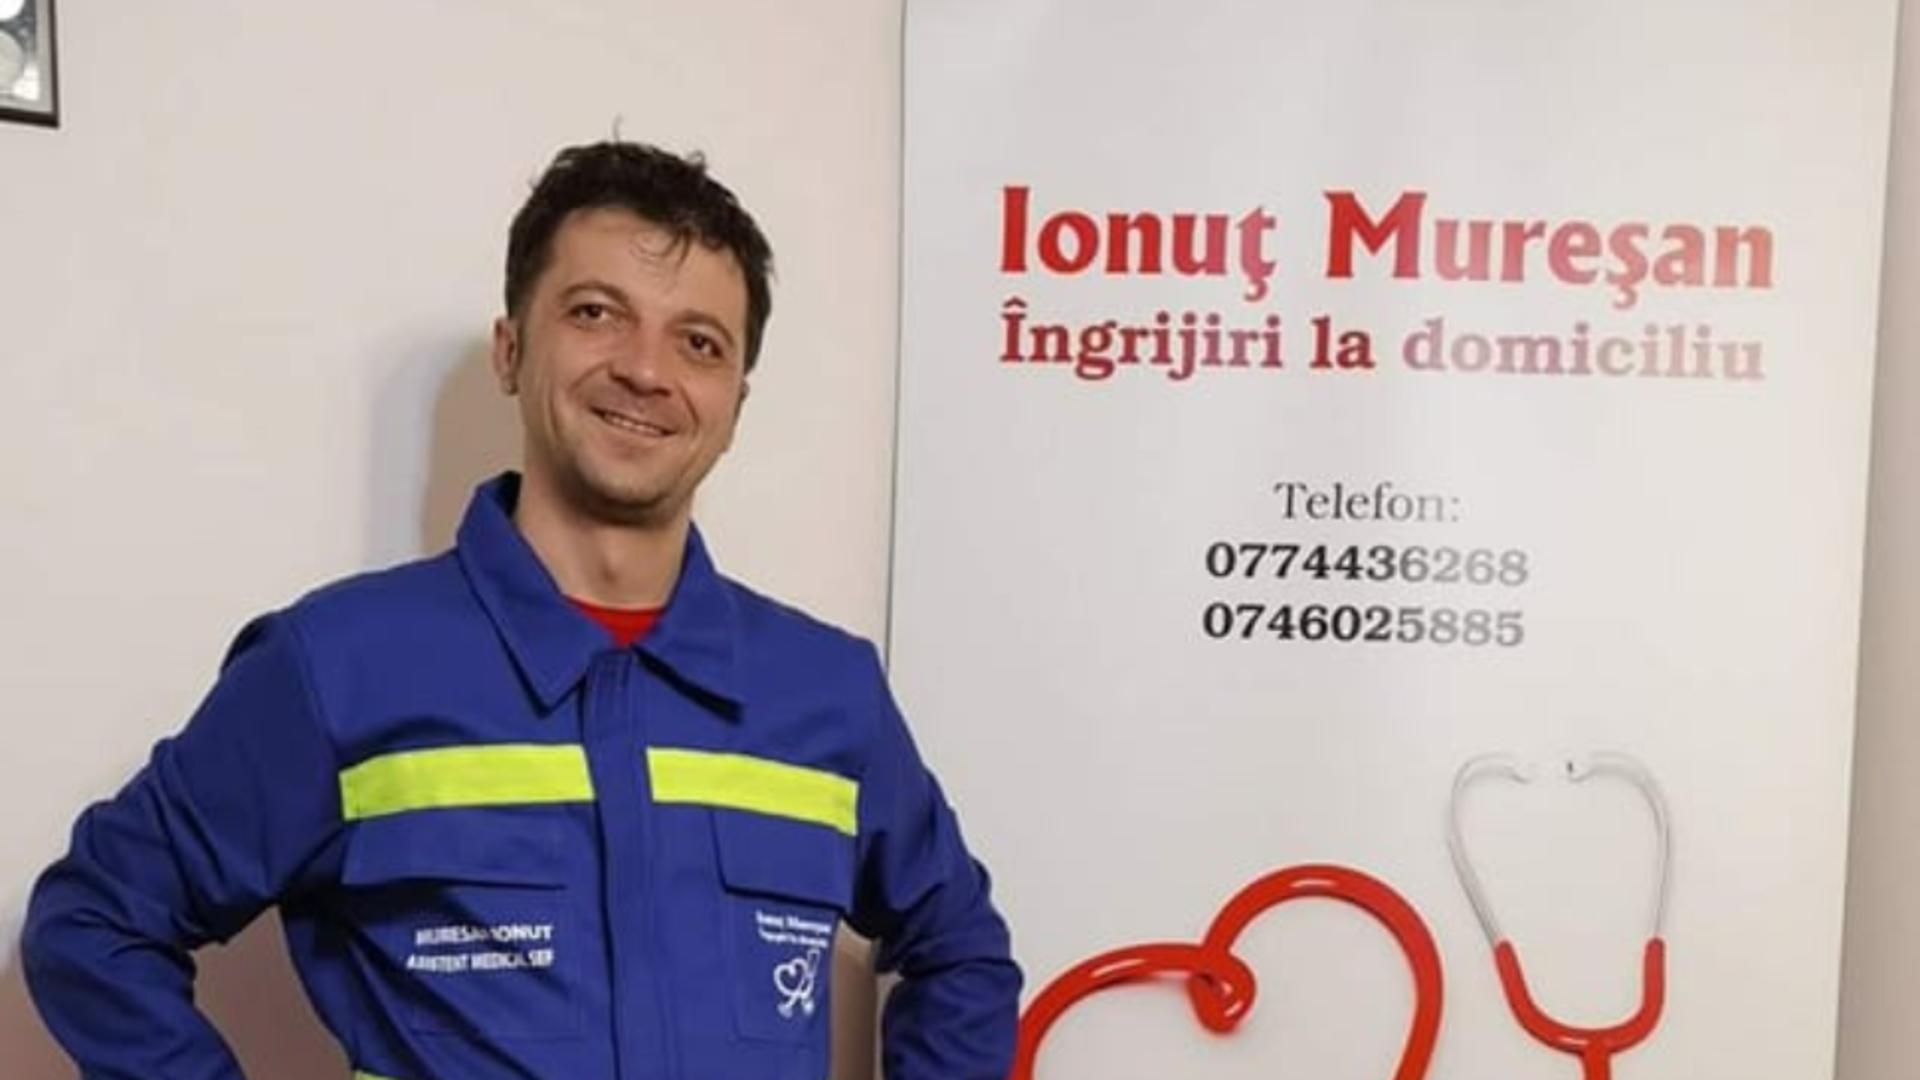 Ionuț Mureșan, asistentul medical care a ales suicidul. Foto: Facebook/Muresan Ionut/Ingrijiri la domiciliu